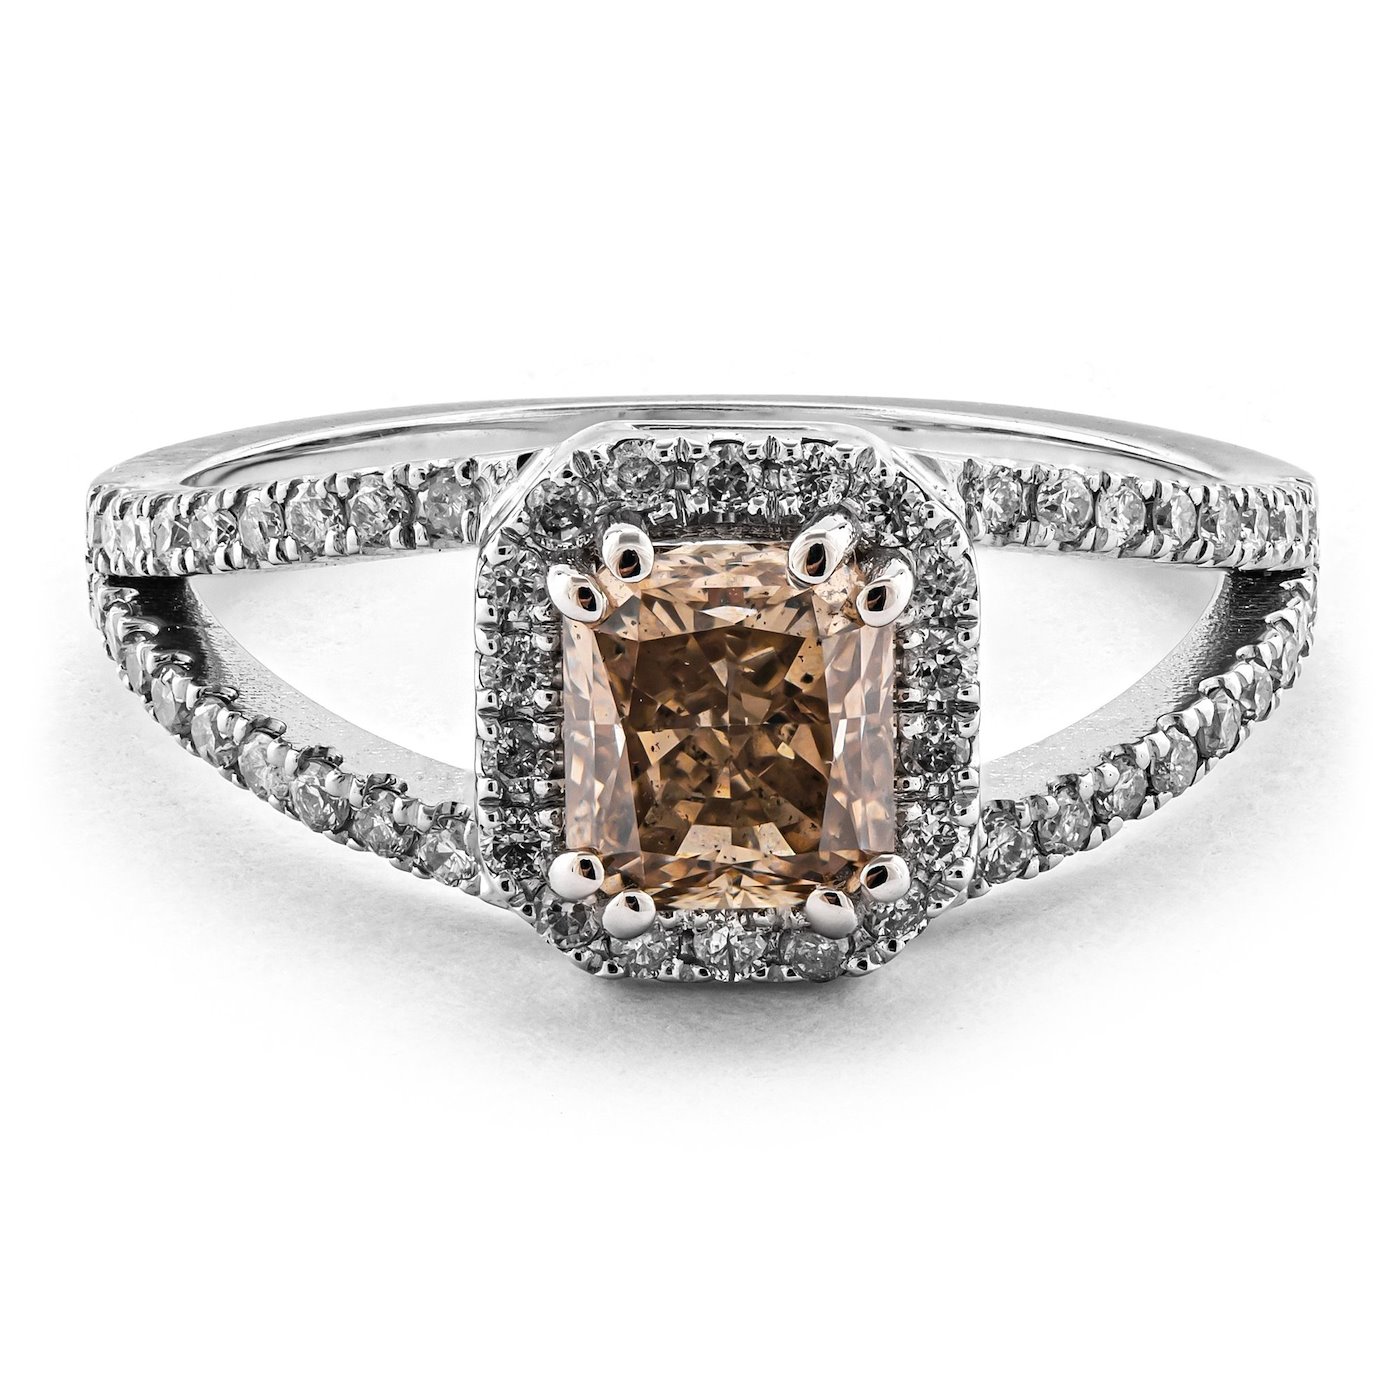 .. - Luxusní prsten s diamanty, zlato 585/1000, značeno platnou puncovní značkou, hrubá hmotnost 2,72 g